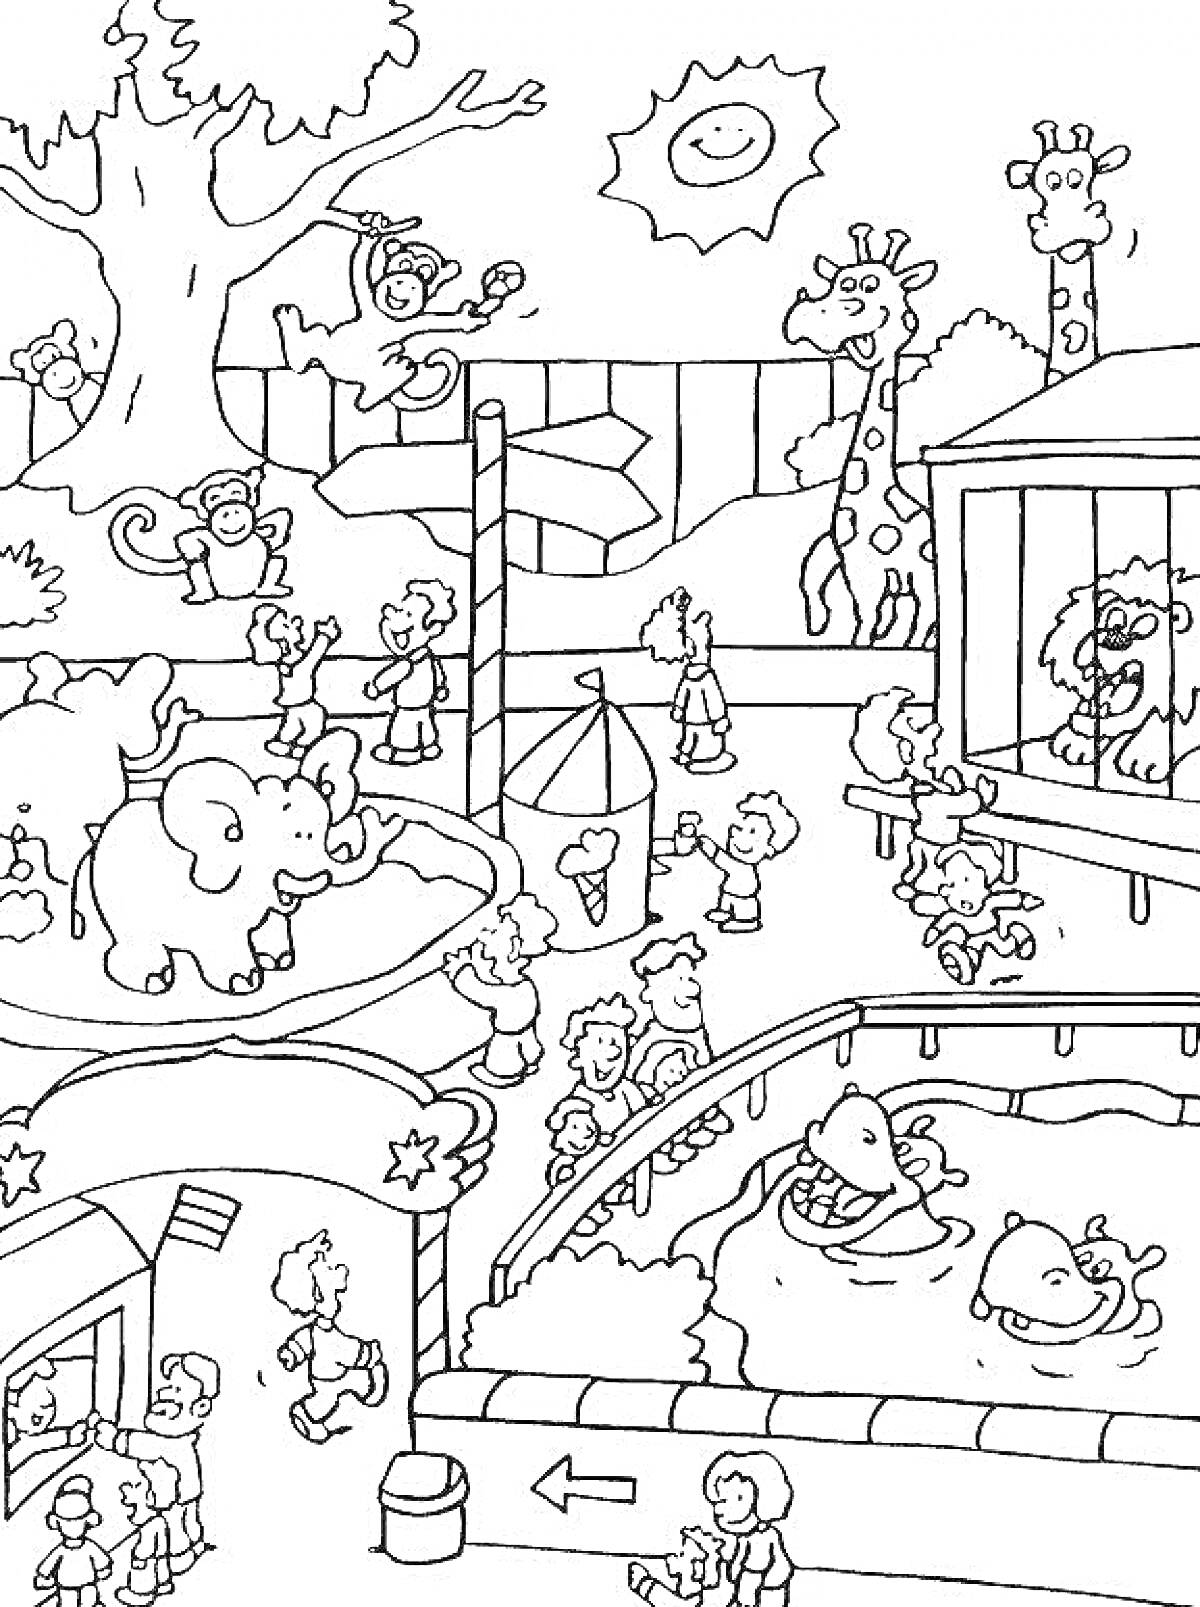 Раскраска Зоопарк с детьми, жирафы, слоны, обезьяны, бегемоты, лев и солнце